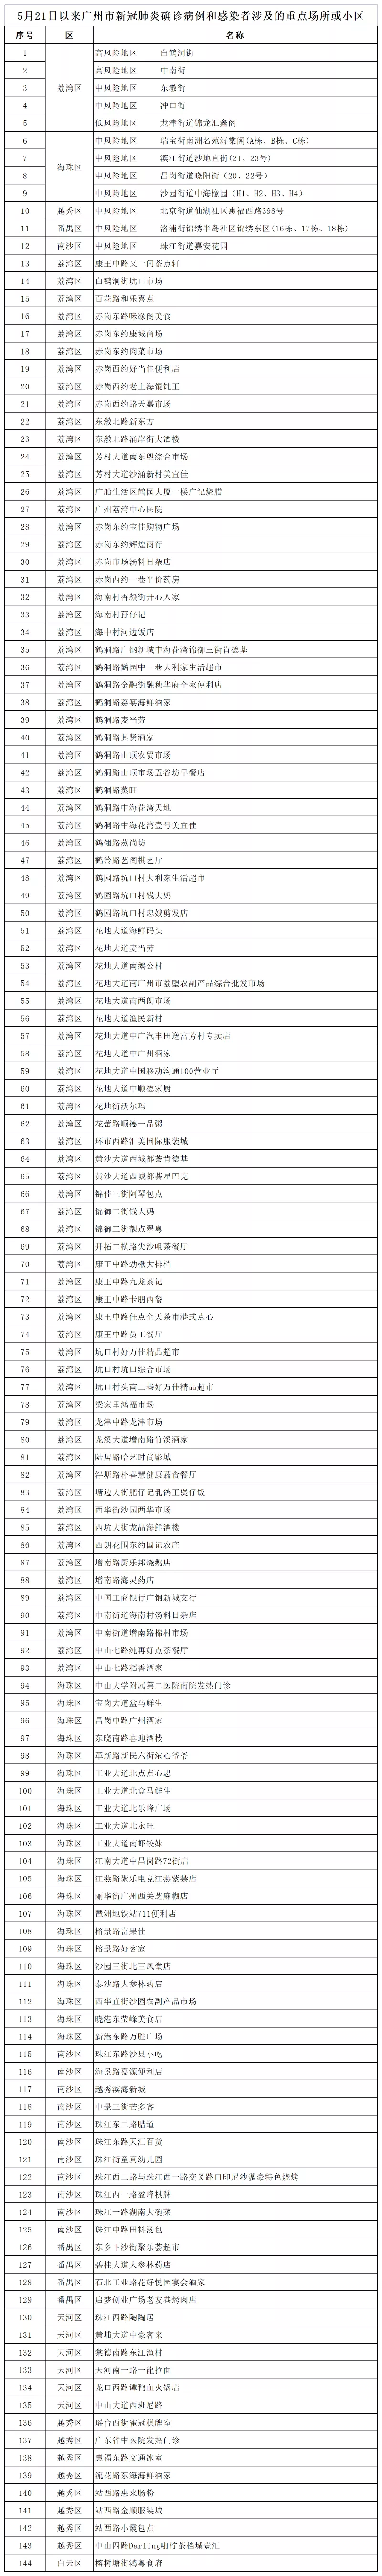 广州核酸大排查共发现阳性40人-疫情新闻发布会通报